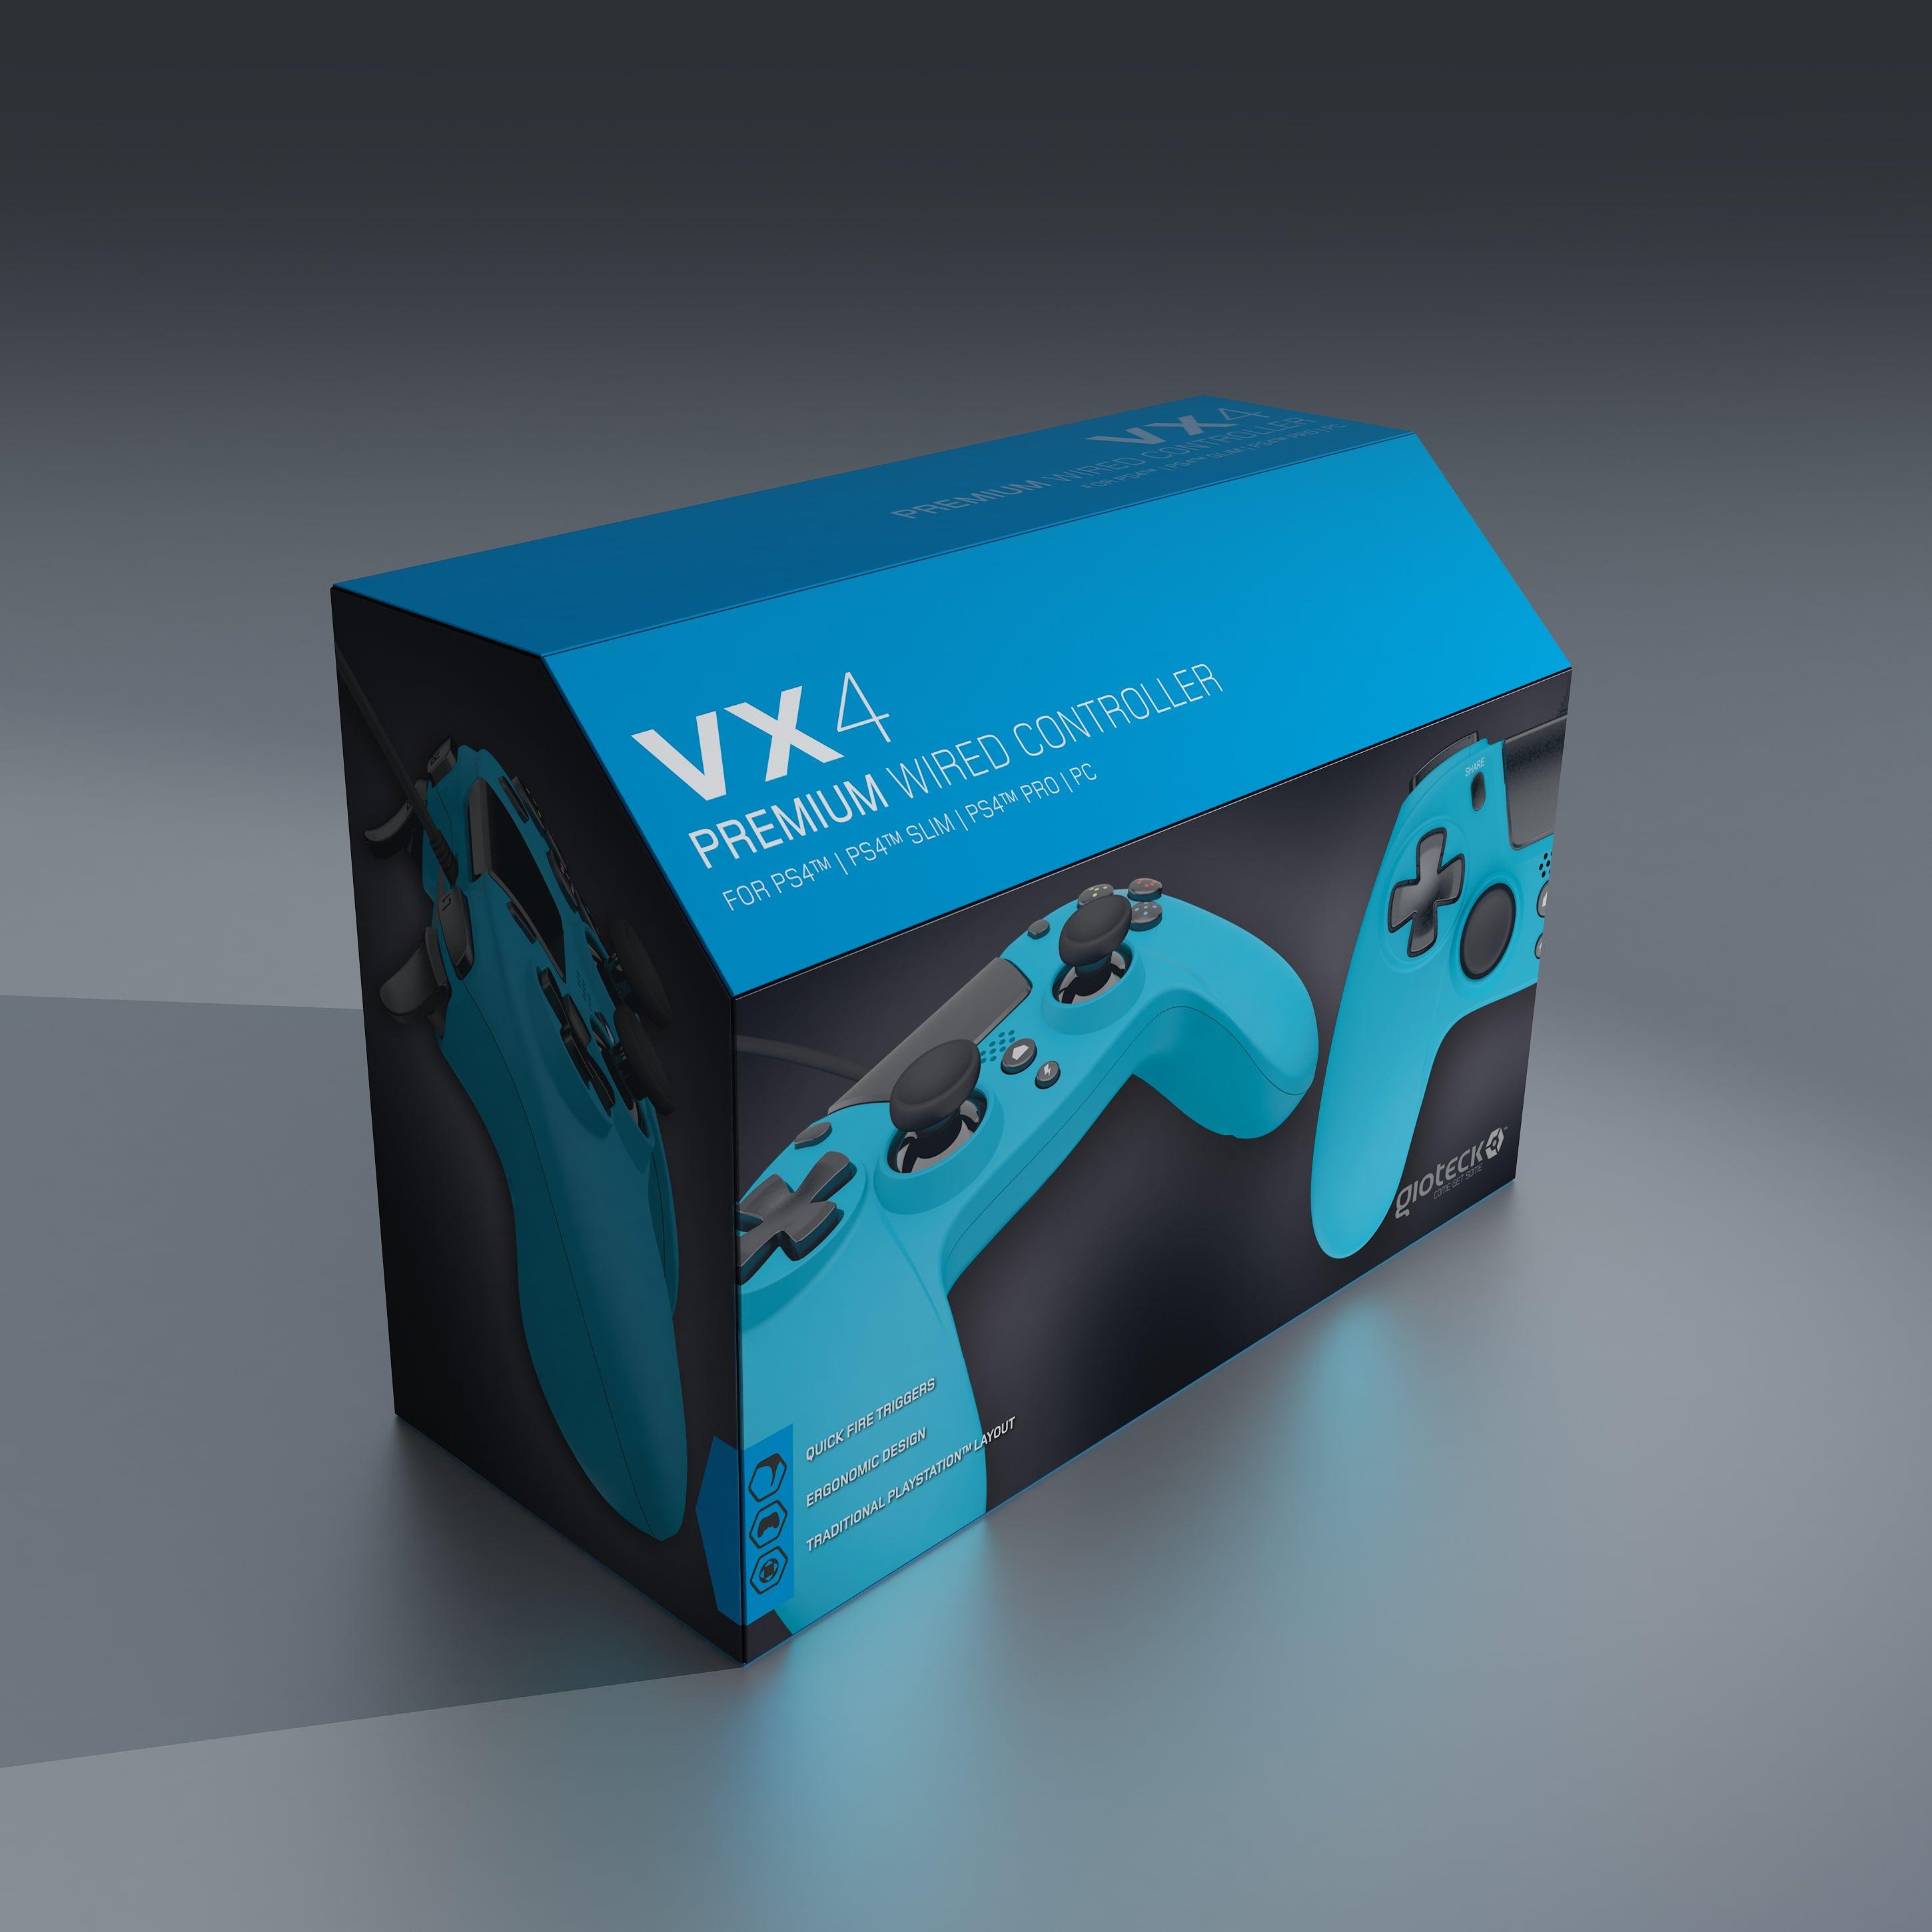 Vx 4 Blue Controller - Want a New Gadget